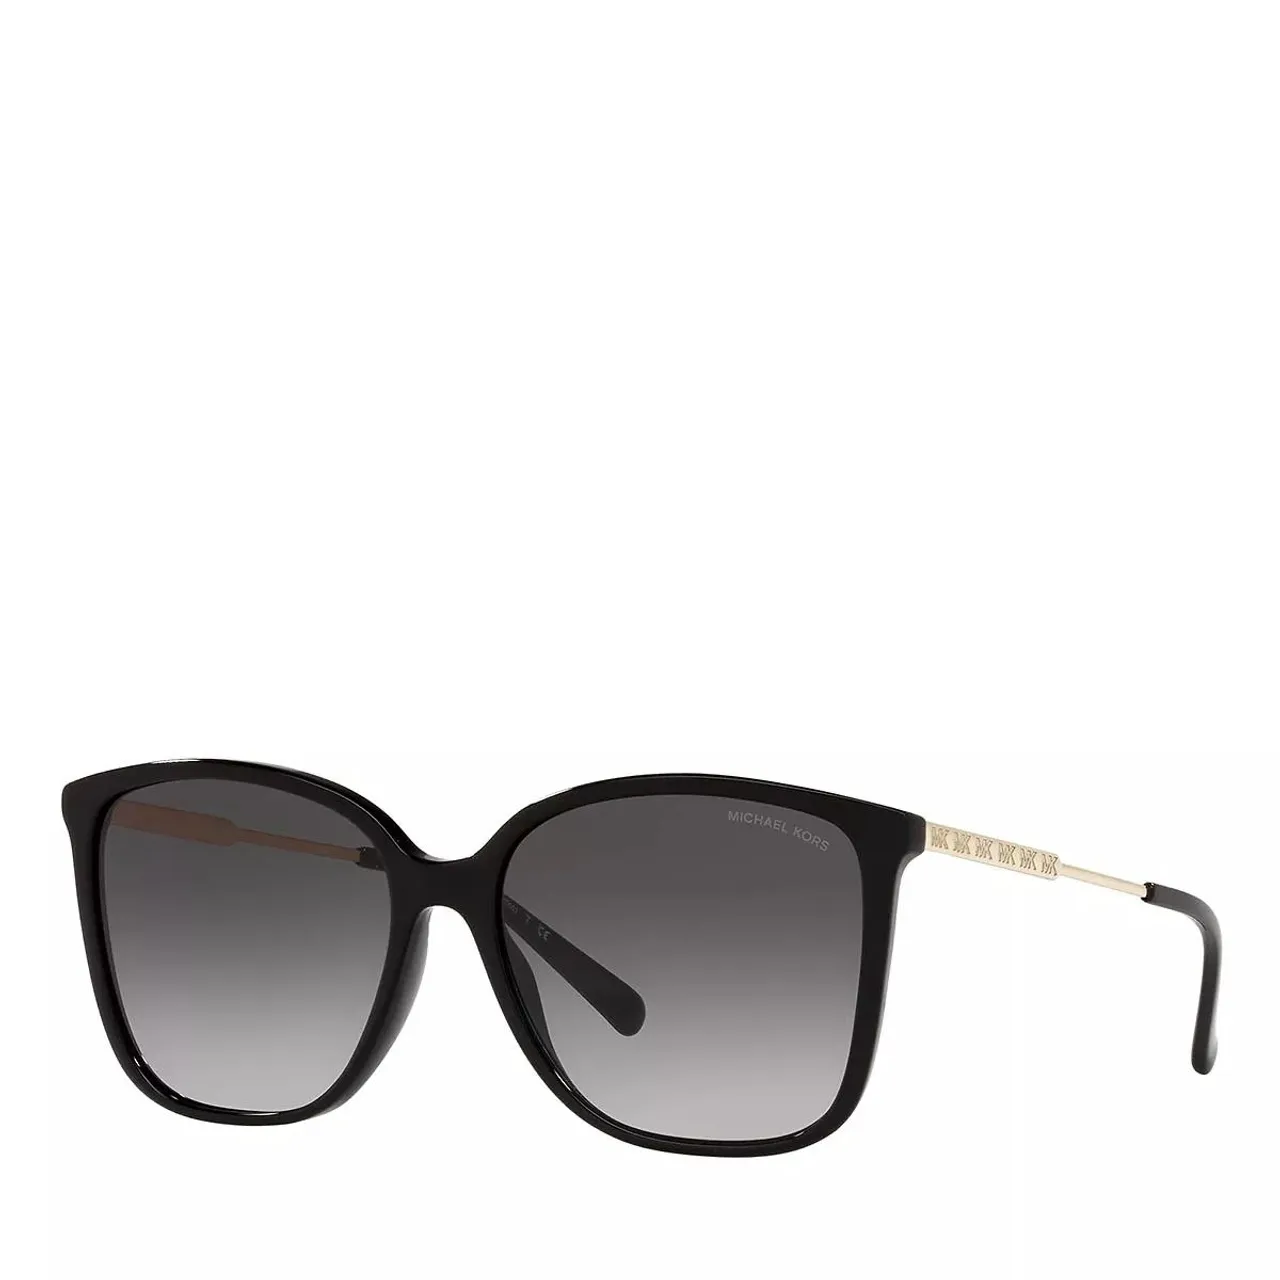 Michael Kors Sonnenbrille - Sunglasses 0MK2169